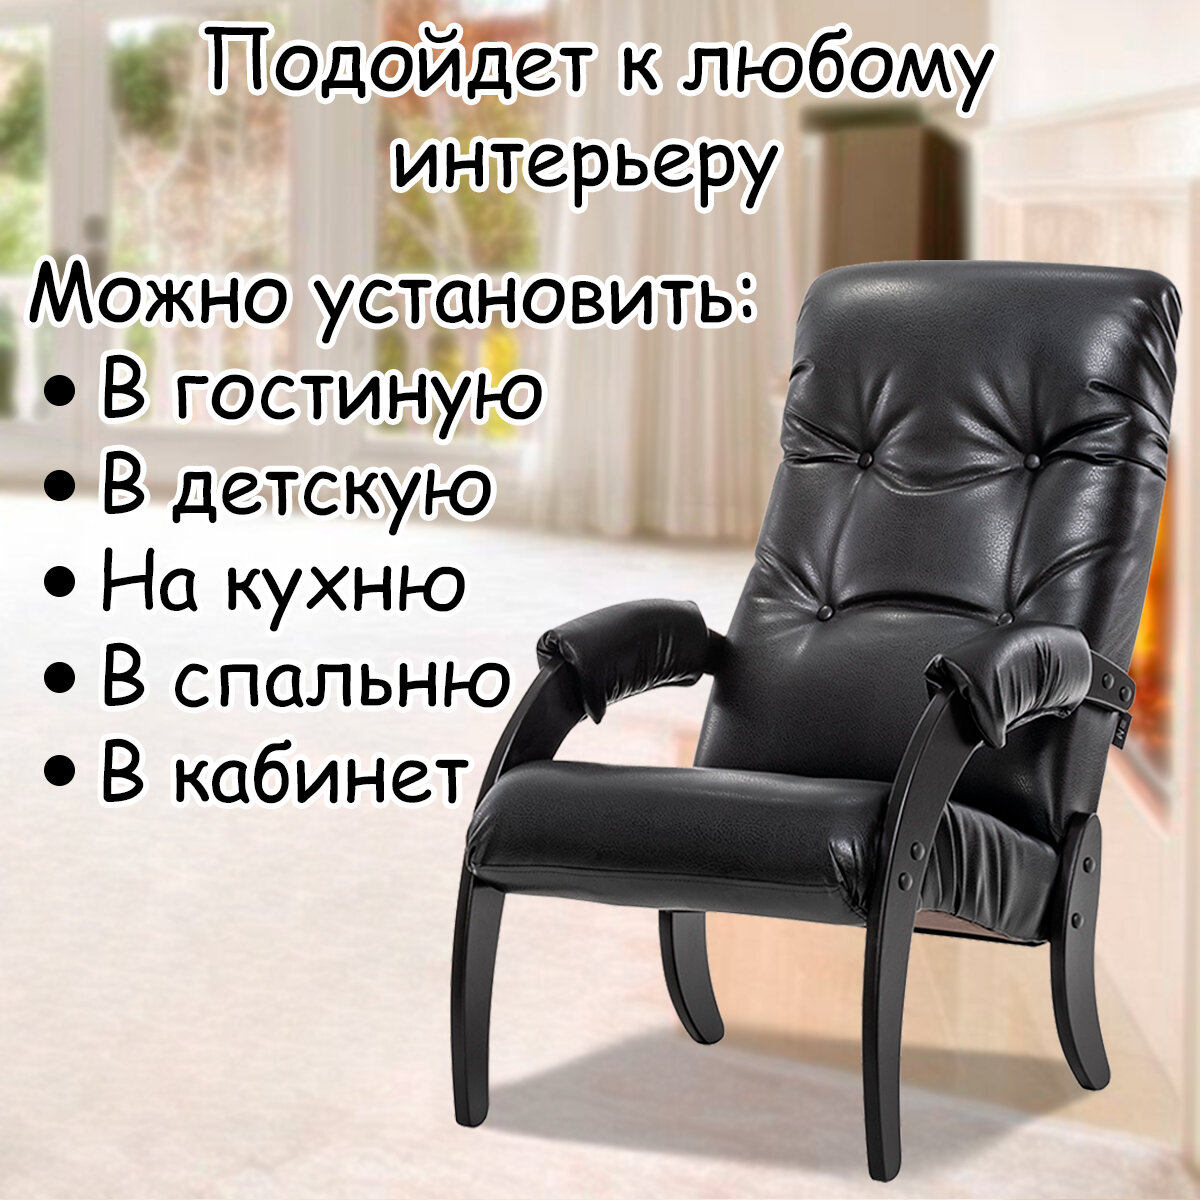 Кресло для взрослых 56х79х98 см, модель 61, экокожа, цвет: Vegas lite black (черный), каркас: Venge (черный) - фотография № 10